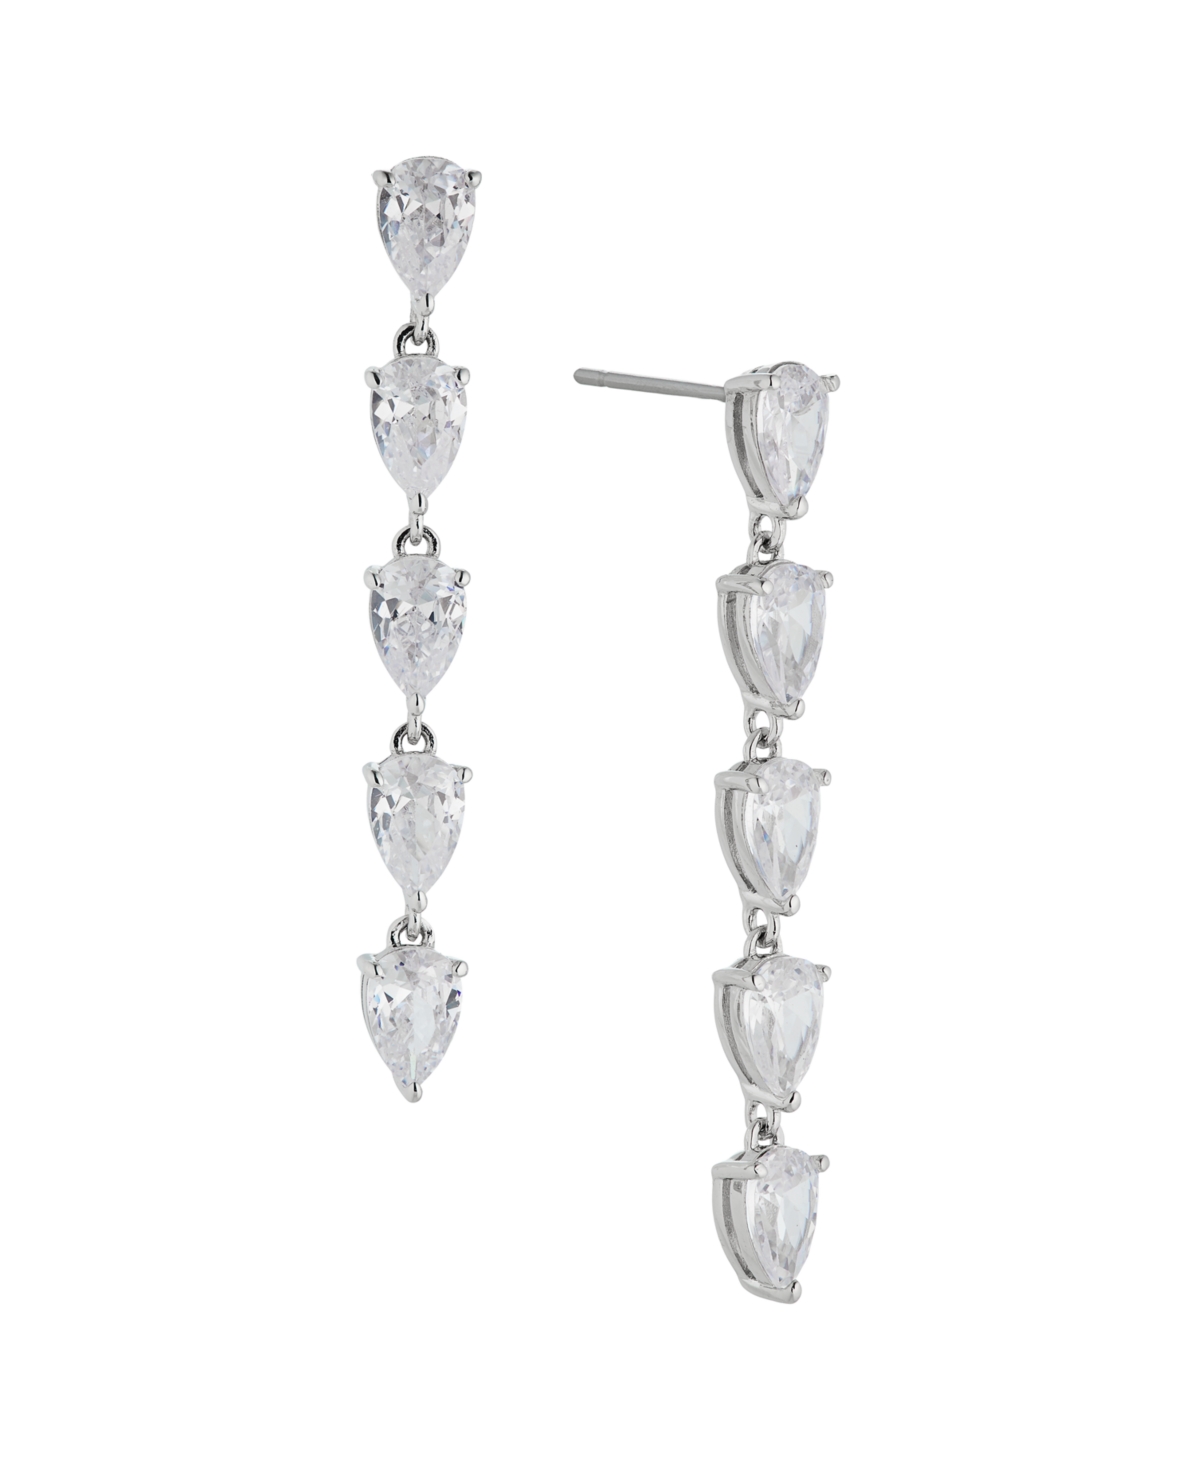 Eliot Danori Pear Shape Cubic Zirconia Drop Earring, Created For Macy's In Silver